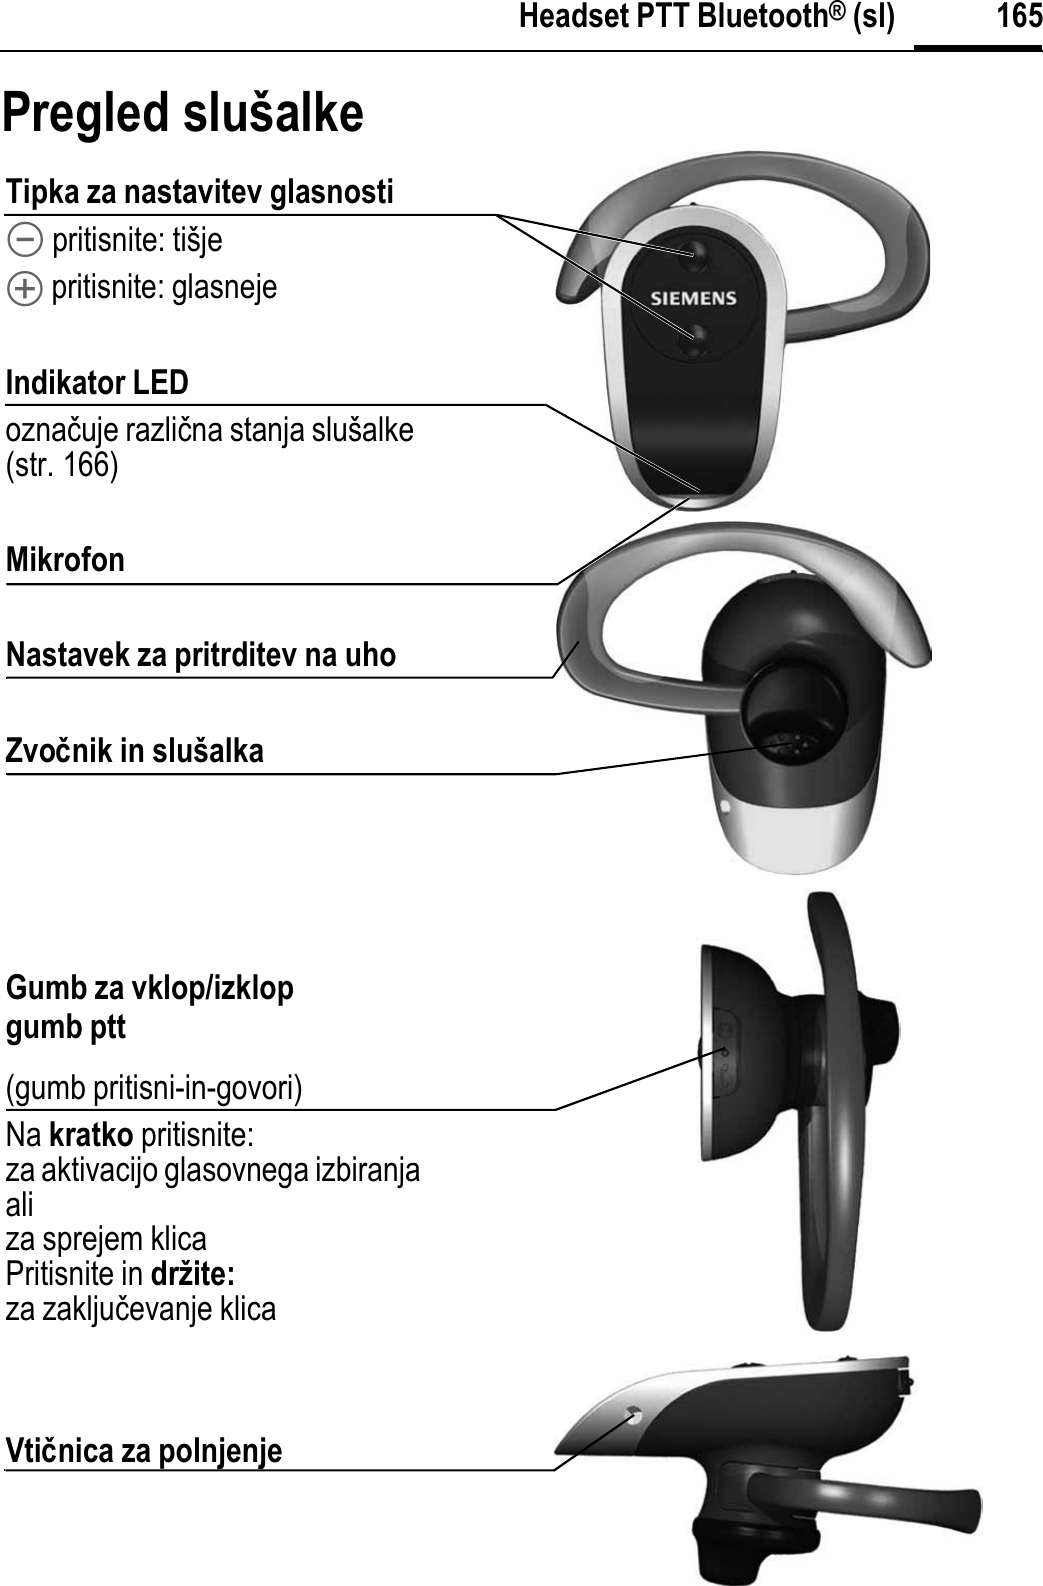 165Headset PTT Bluetooth® (sl)Pregled slušalkeTipka za nastavitev glasnosti\ pritisnite: tišje[ pritisnite: glasnejeIndikator LEDoznaþuje razliþna stanja slušalke (str. 166)MikrofonNastavek za pritrditev na uhoZvoÿnik in slušalkaGumb za vklop/izklopgumb ptt(gumb pritisni-in-govori)Na kratko pritisnite:za aktivacijo glasovnega izbiranjaaliza sprejem klicaPritisnite in držite:za zakljuþevanje klicaVtiÿnica za polnjenje